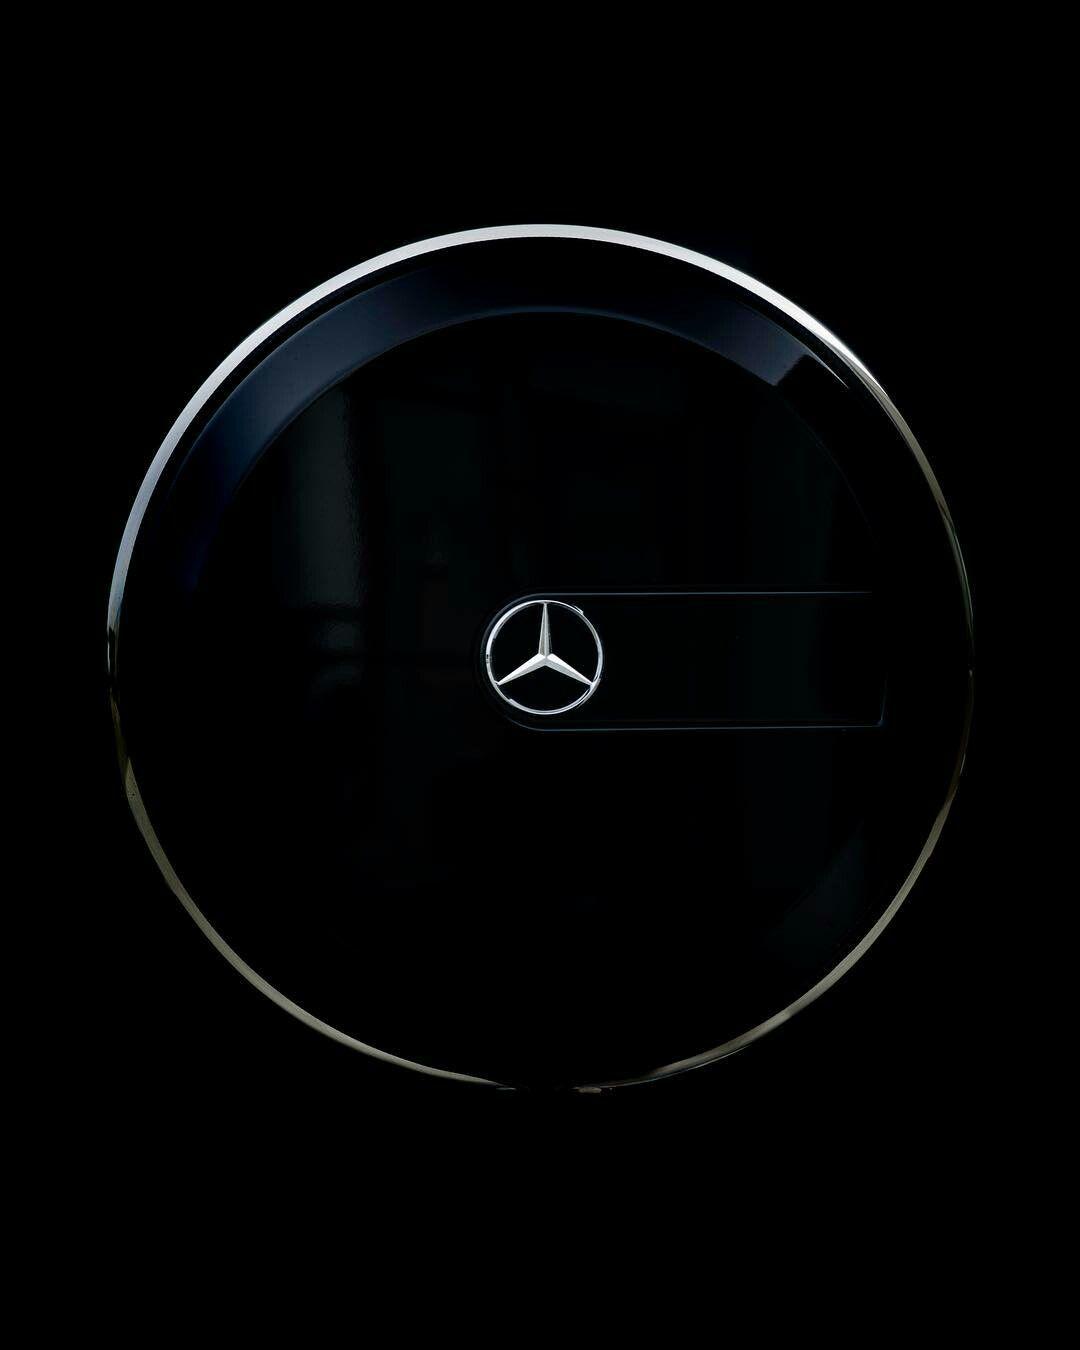 G-Class Logo - Mercedes G63 AMG W463 | Mercedes | G63 amg, Mercedes benz wallpaper ...